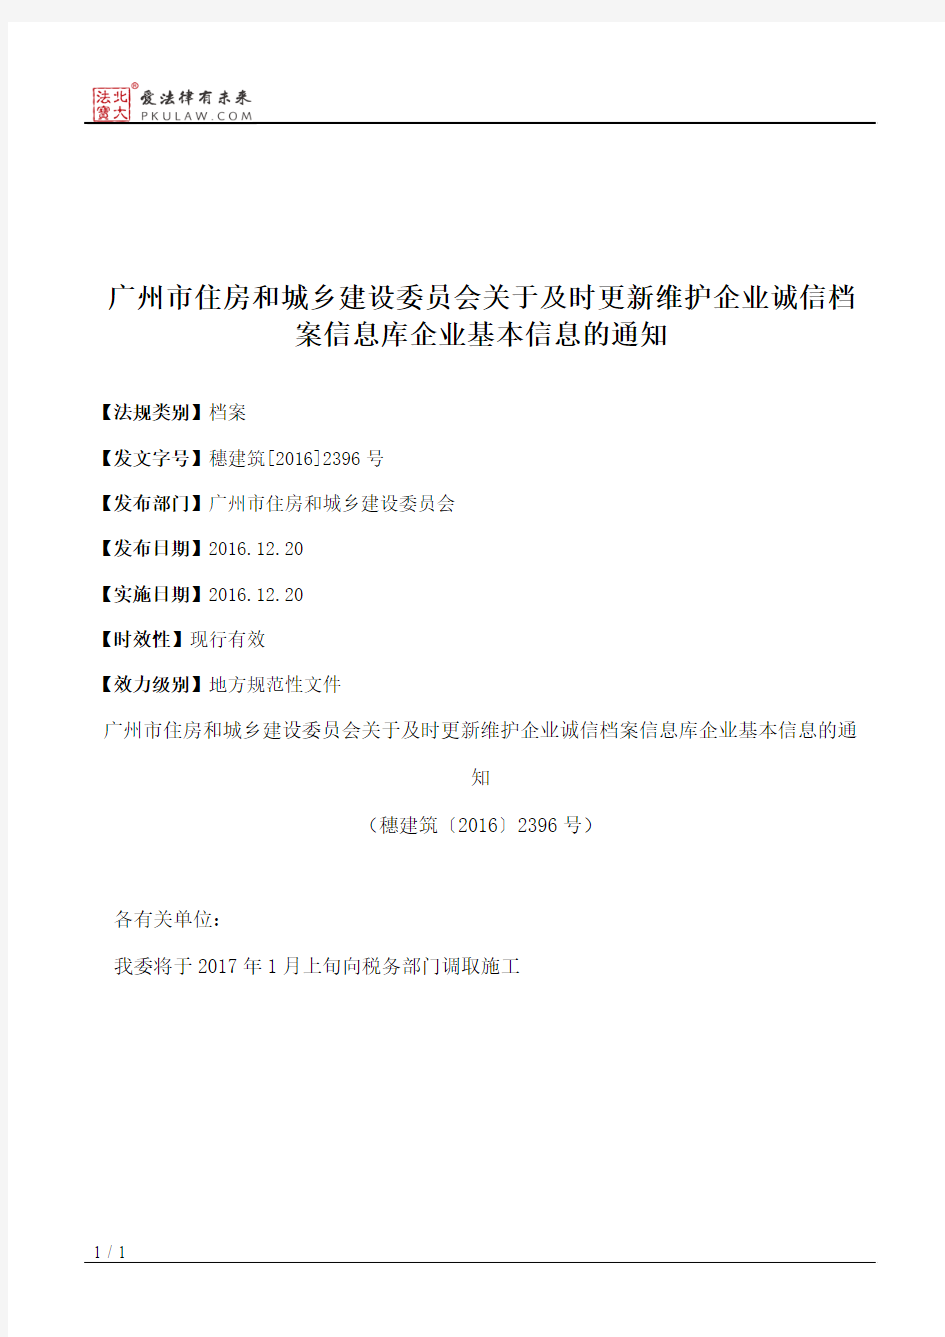 广州市住房和城乡建设委员会关于及时更新维护企业诚信档案信息库